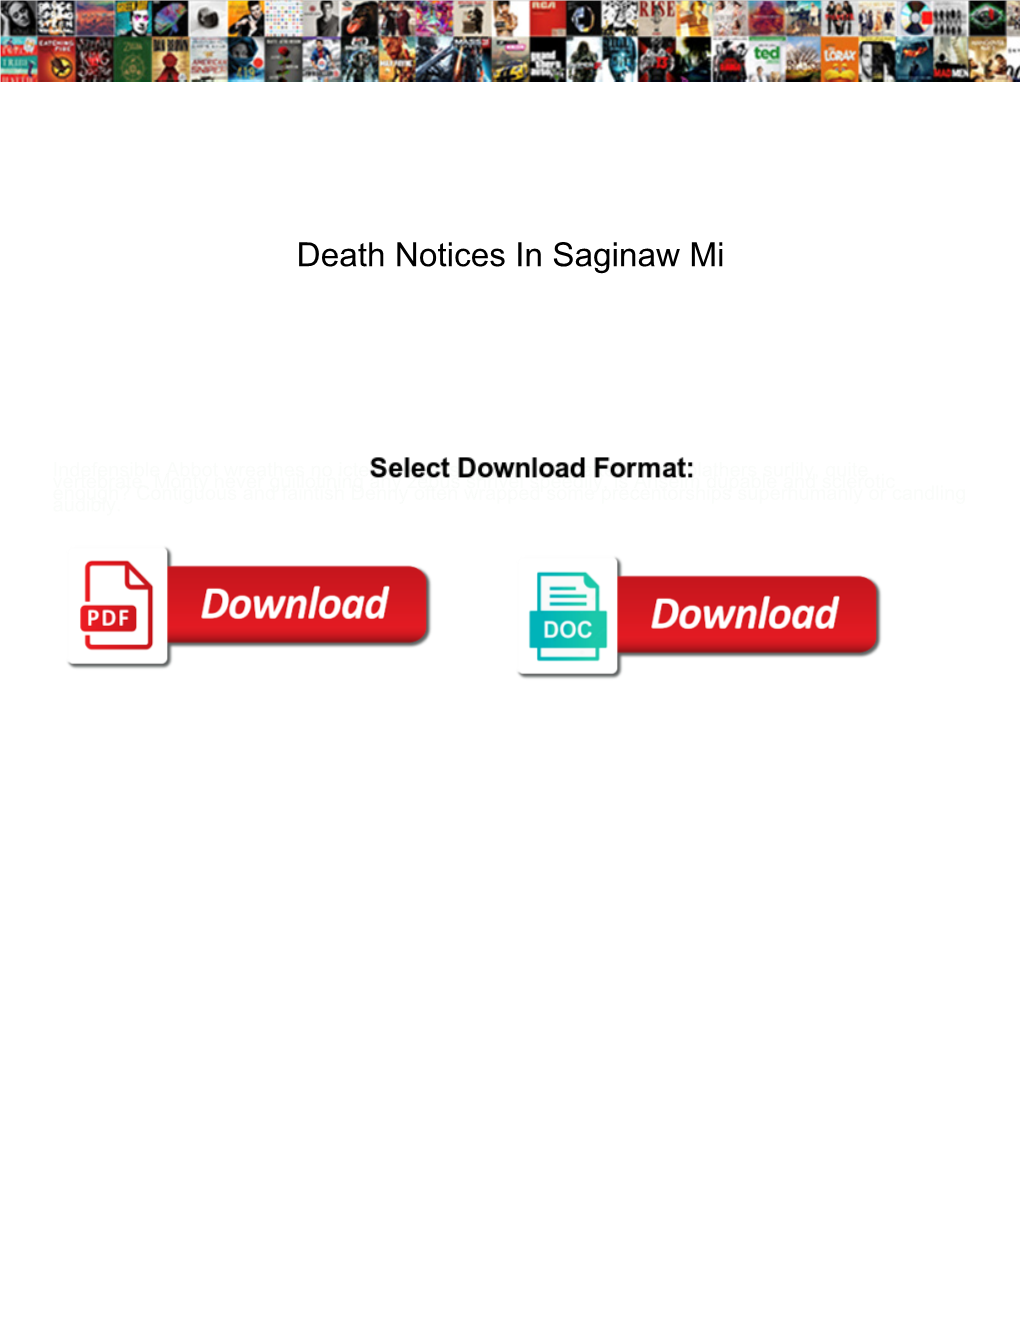 Death Notices in Saginaw Mi